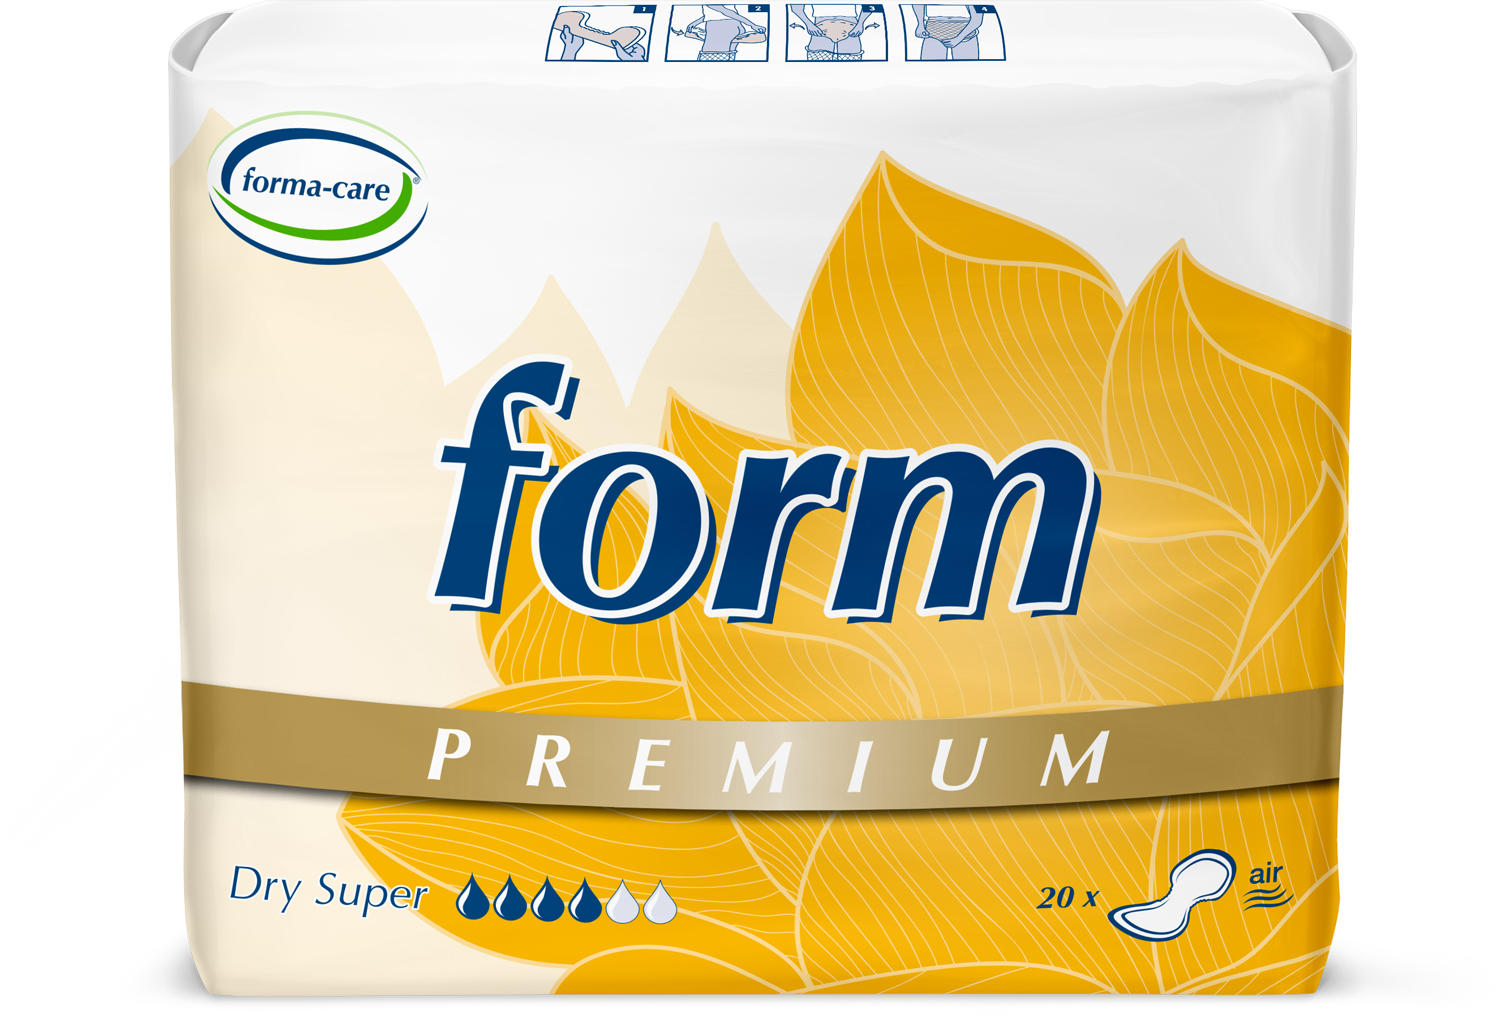 Abbildung eines Beutels der Premium-Vorlage forma-care premium dry, Saugstärke super